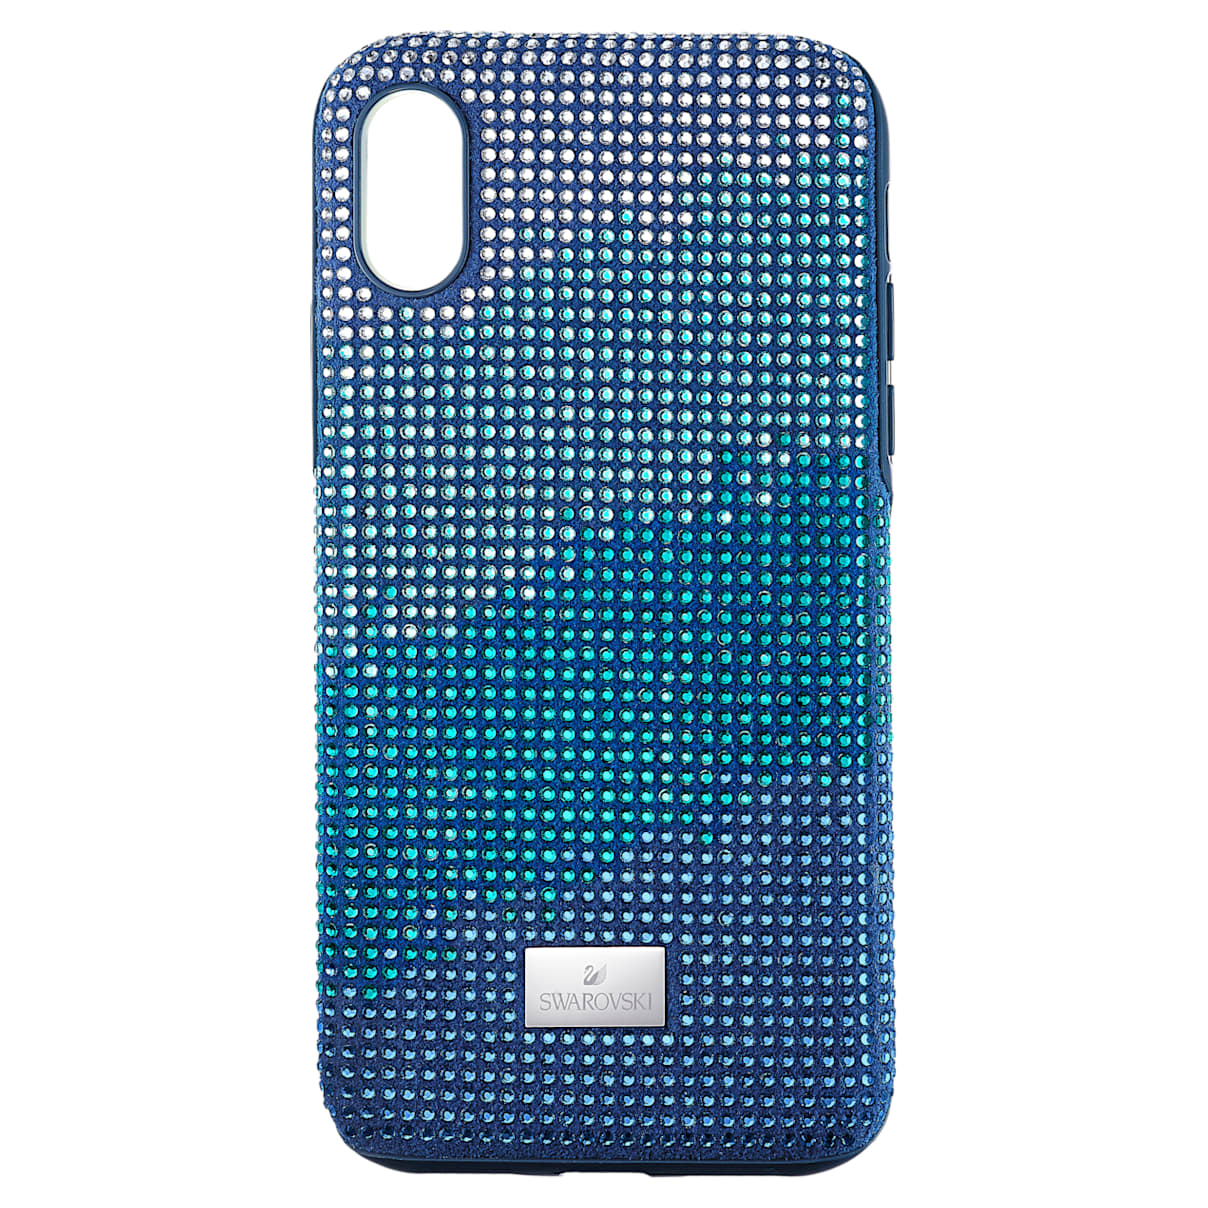 Custodia per smartphone con bordi protettivi Crystalgram, iPhone® X/XS, azzurro